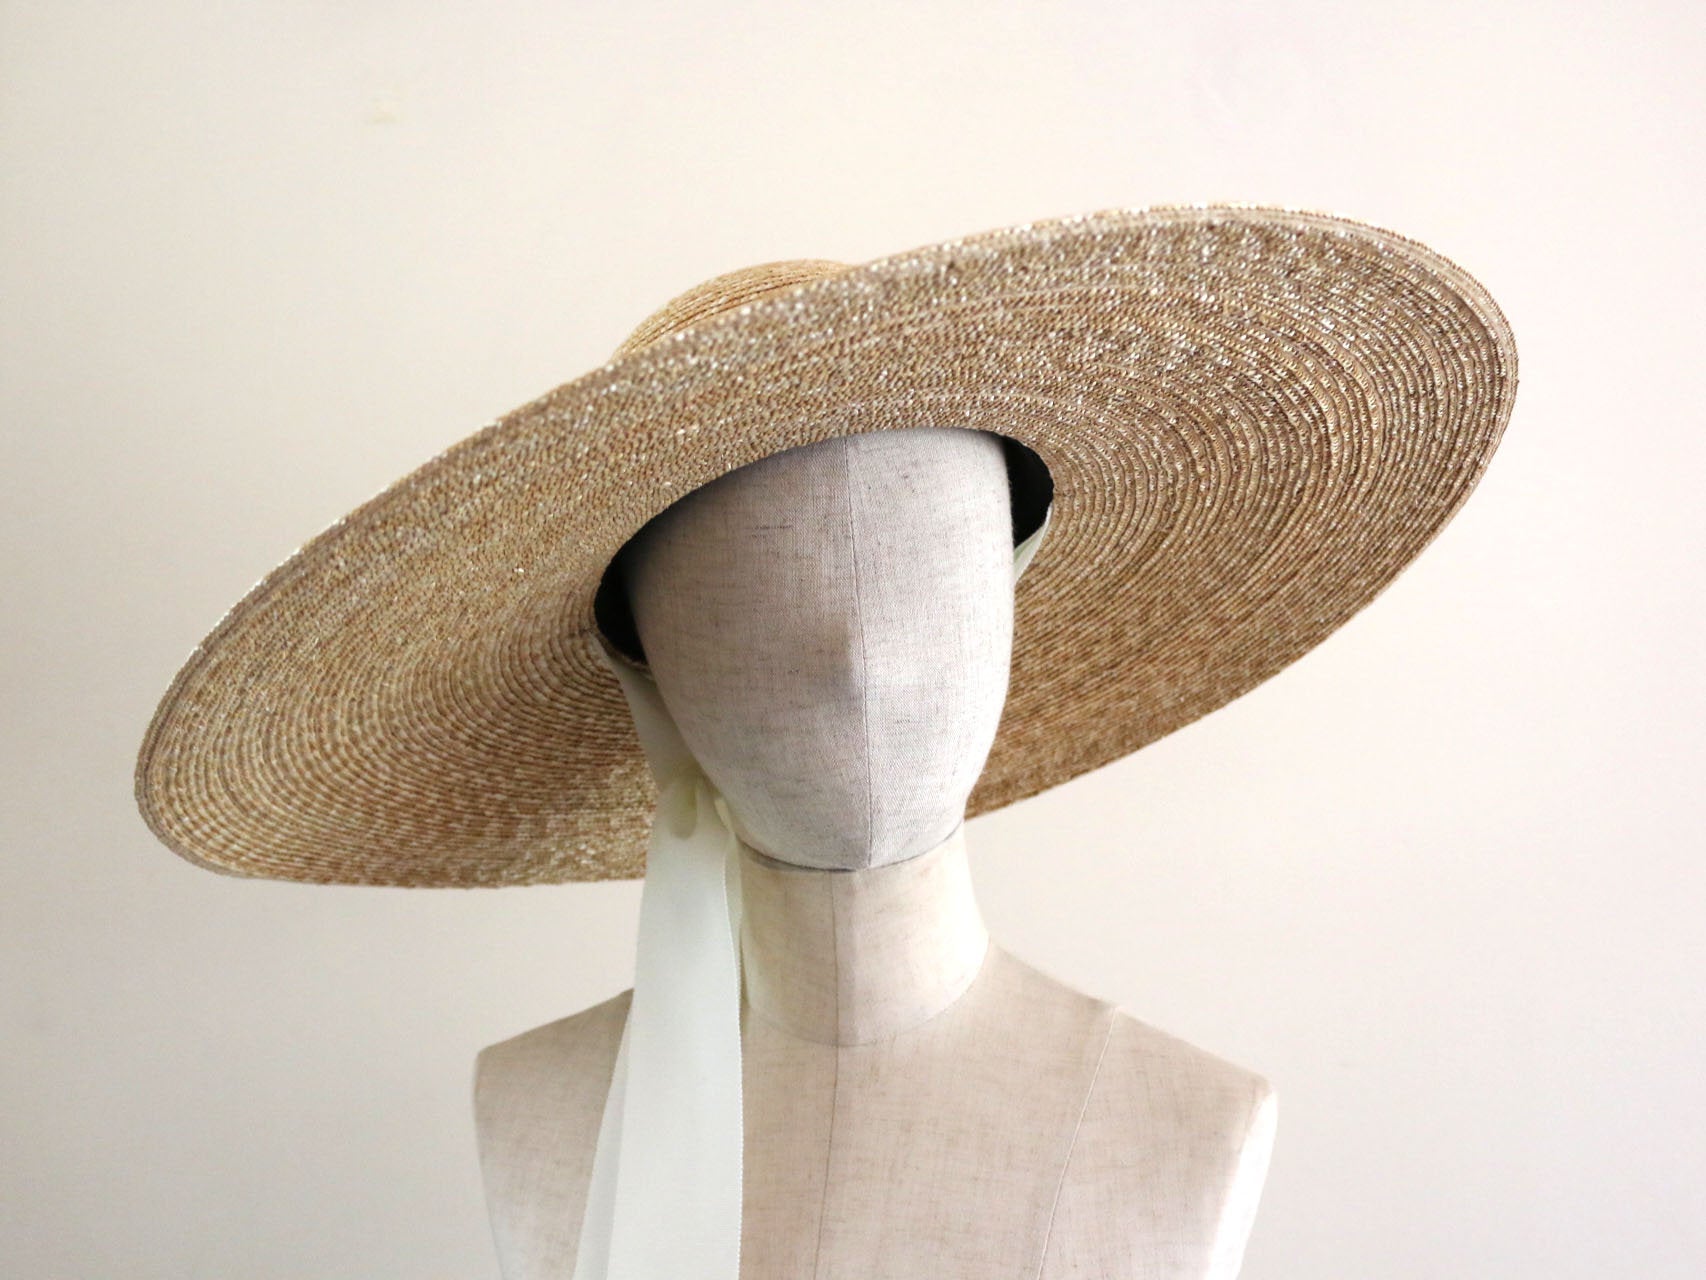 wide brimmed straw hat "Adeline Black"